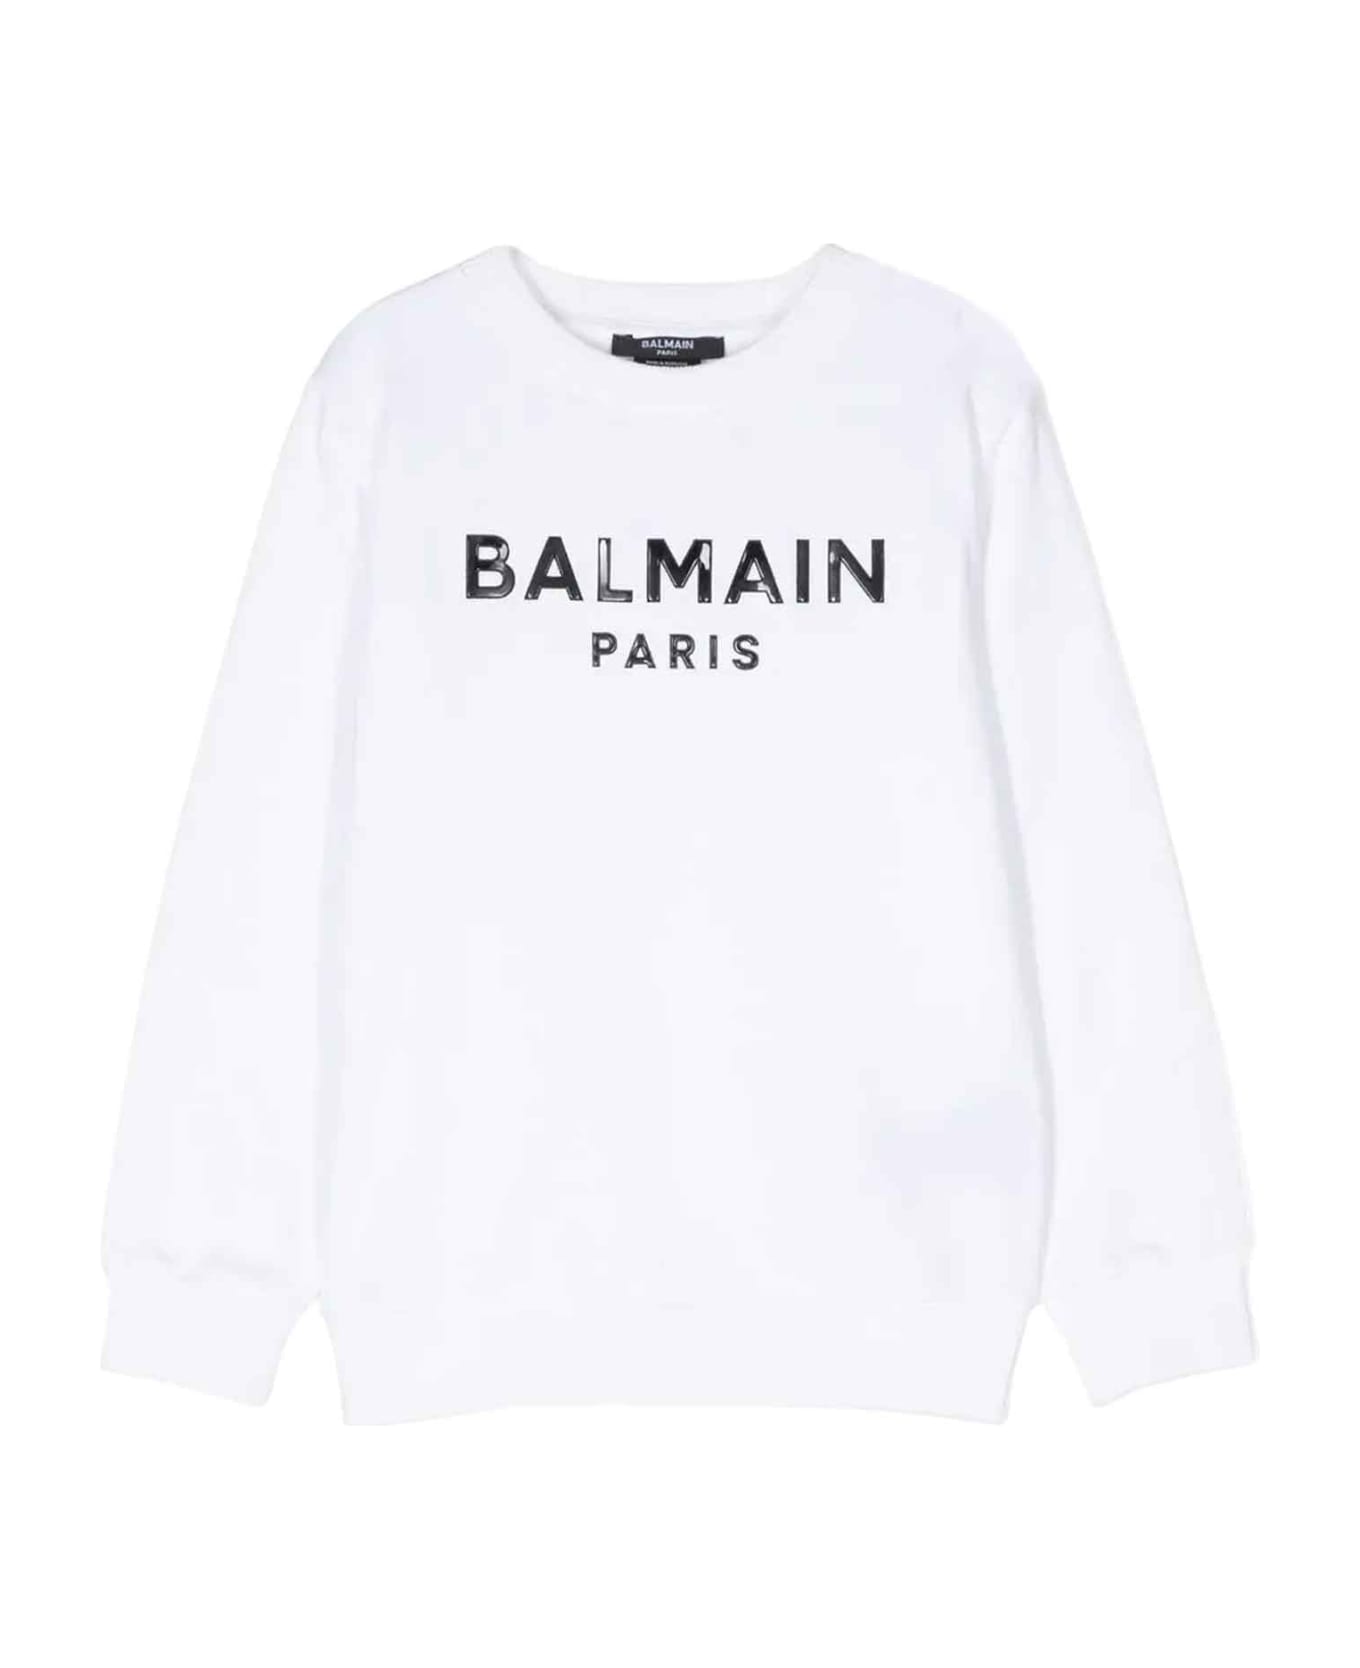 Balmain White Sweatshirt Unisex - Bianco/nero